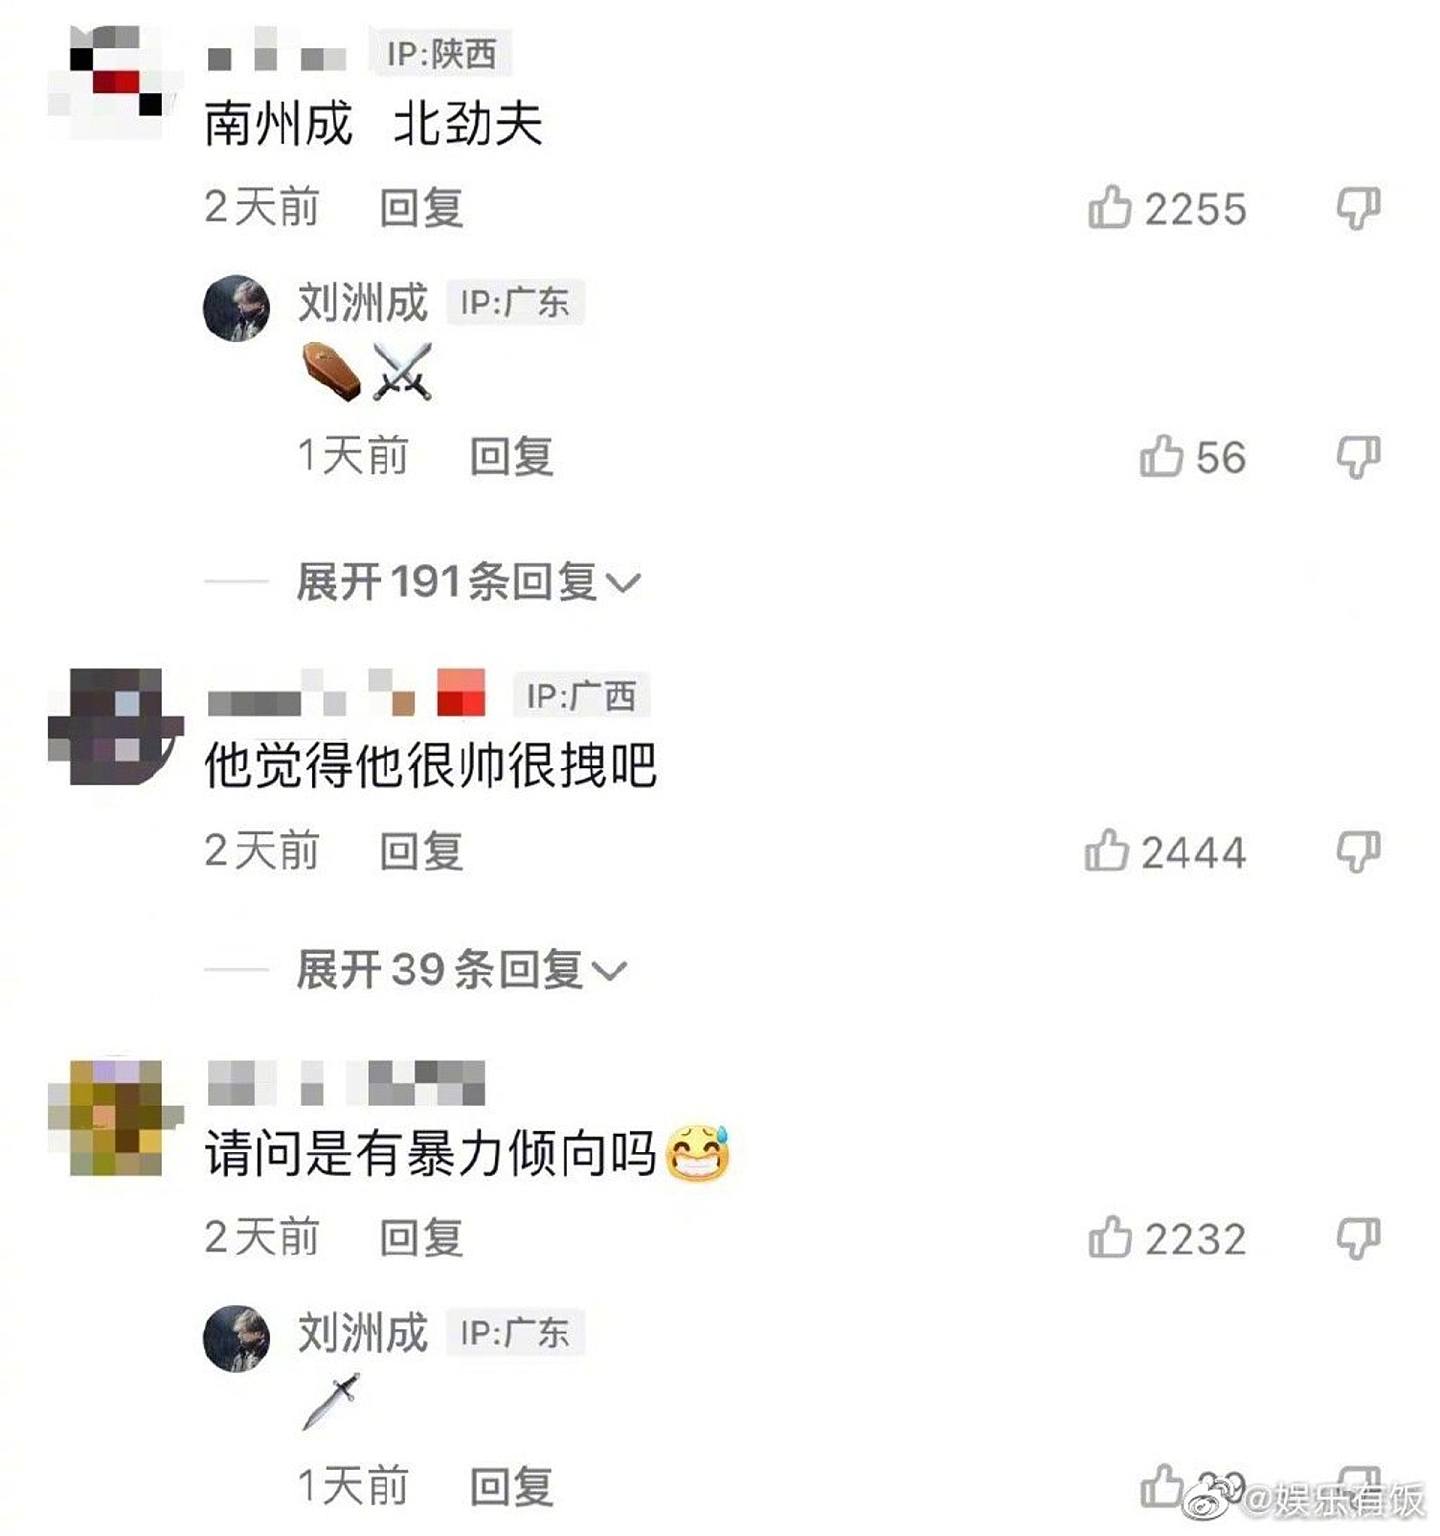 回覆网民评论时，刘洲成也尽显暴力倾向。 （微博）